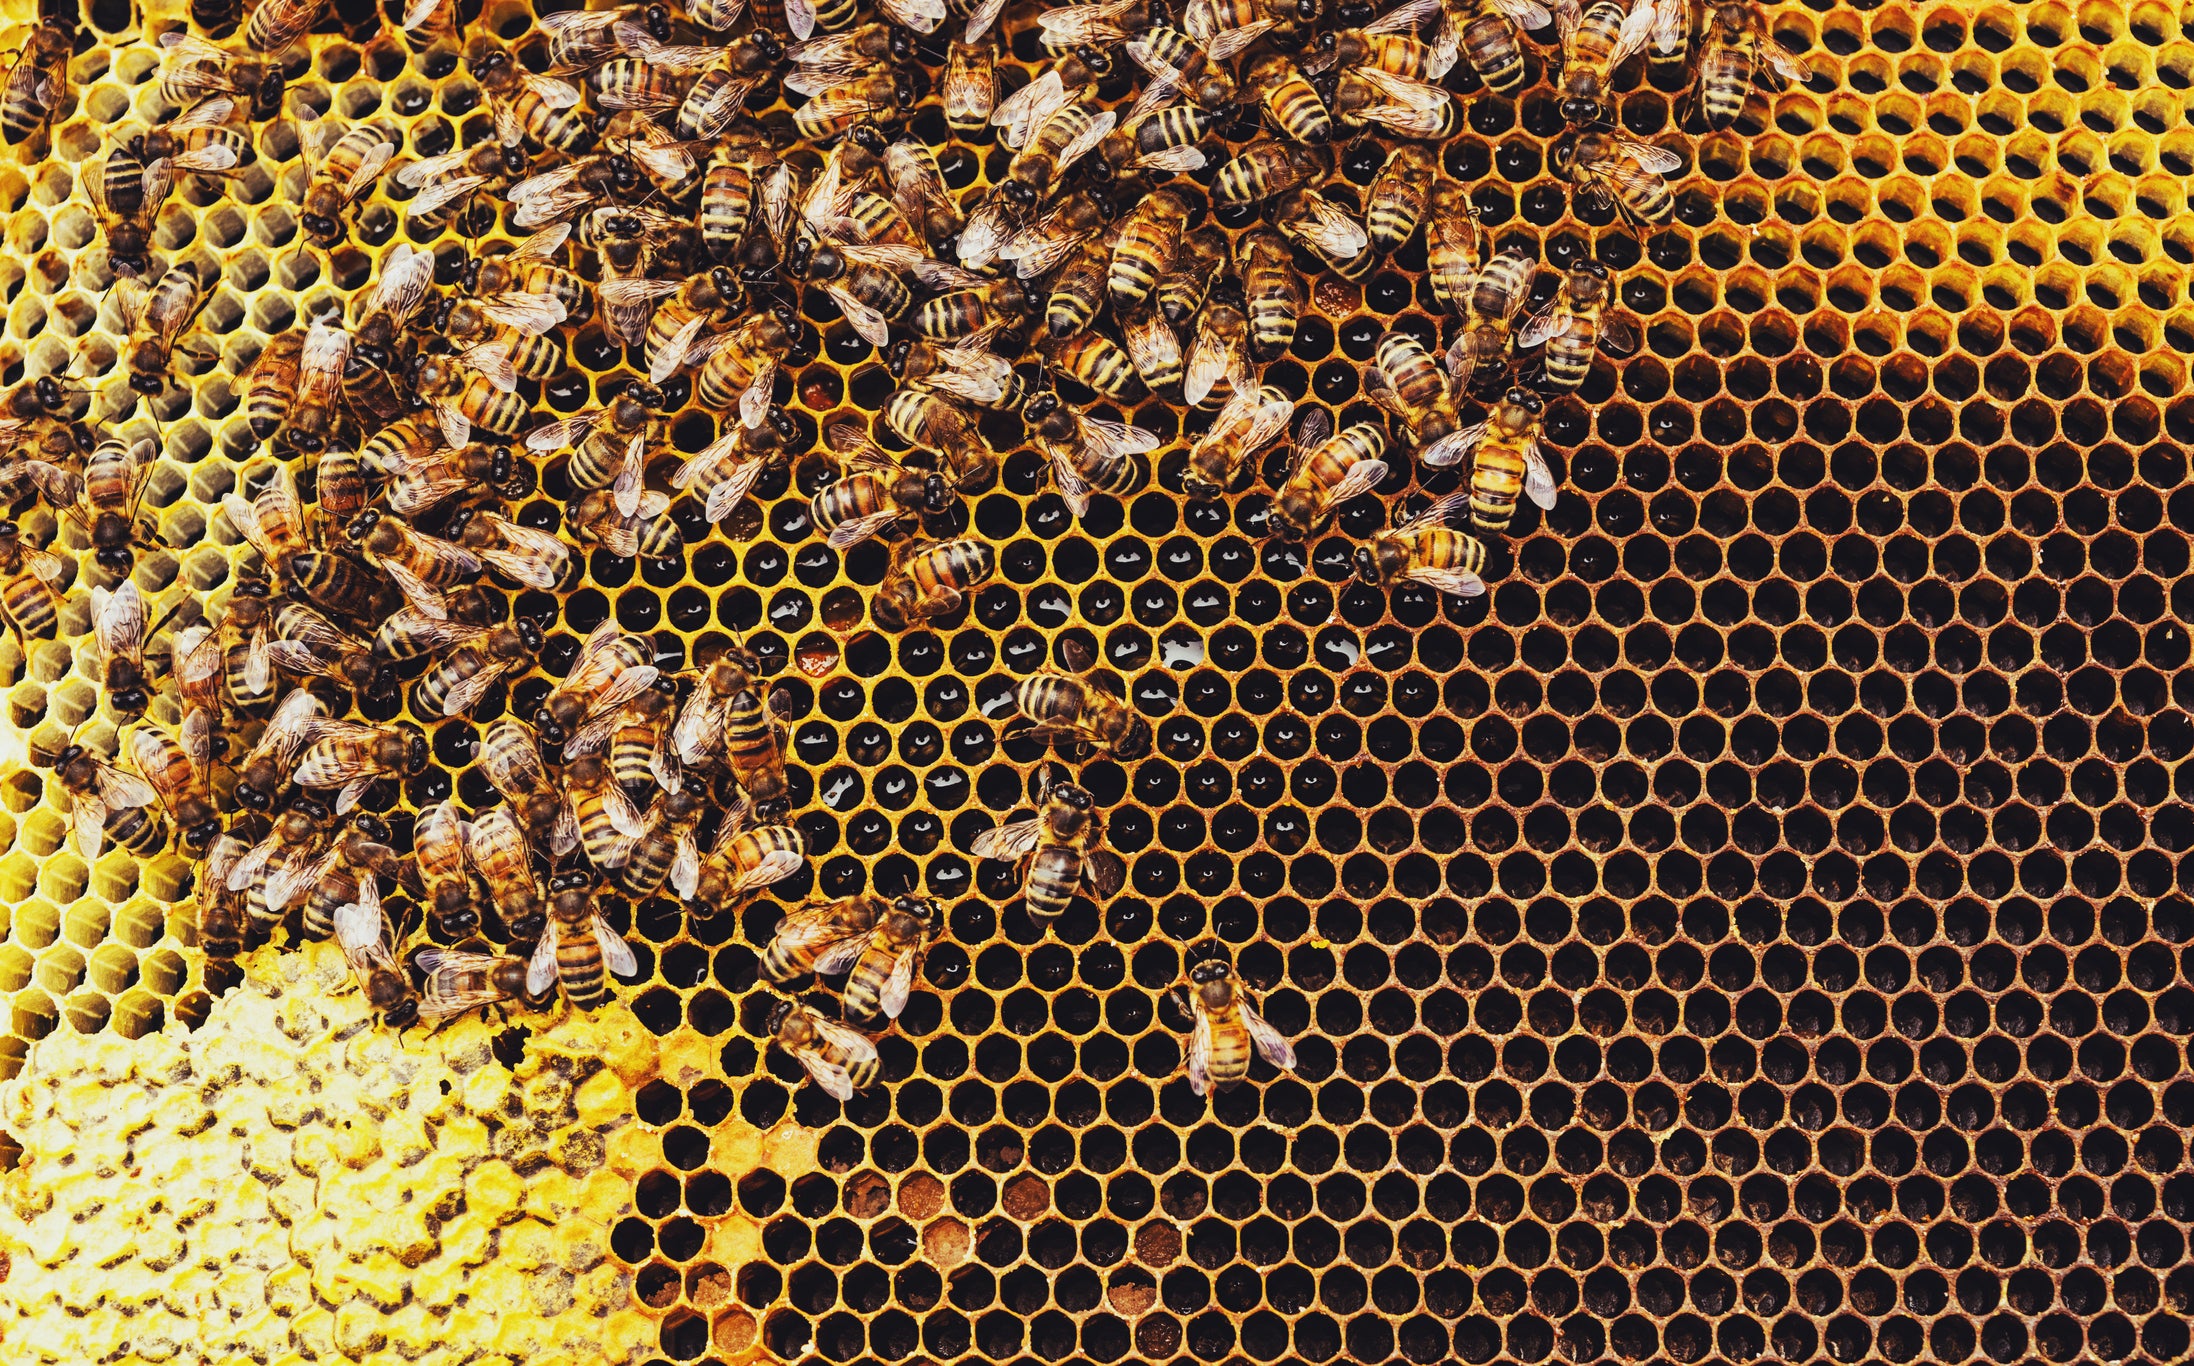 Se estima que los servicios de polinización de las abejas rondan los 30.000 millones de dólares al año.